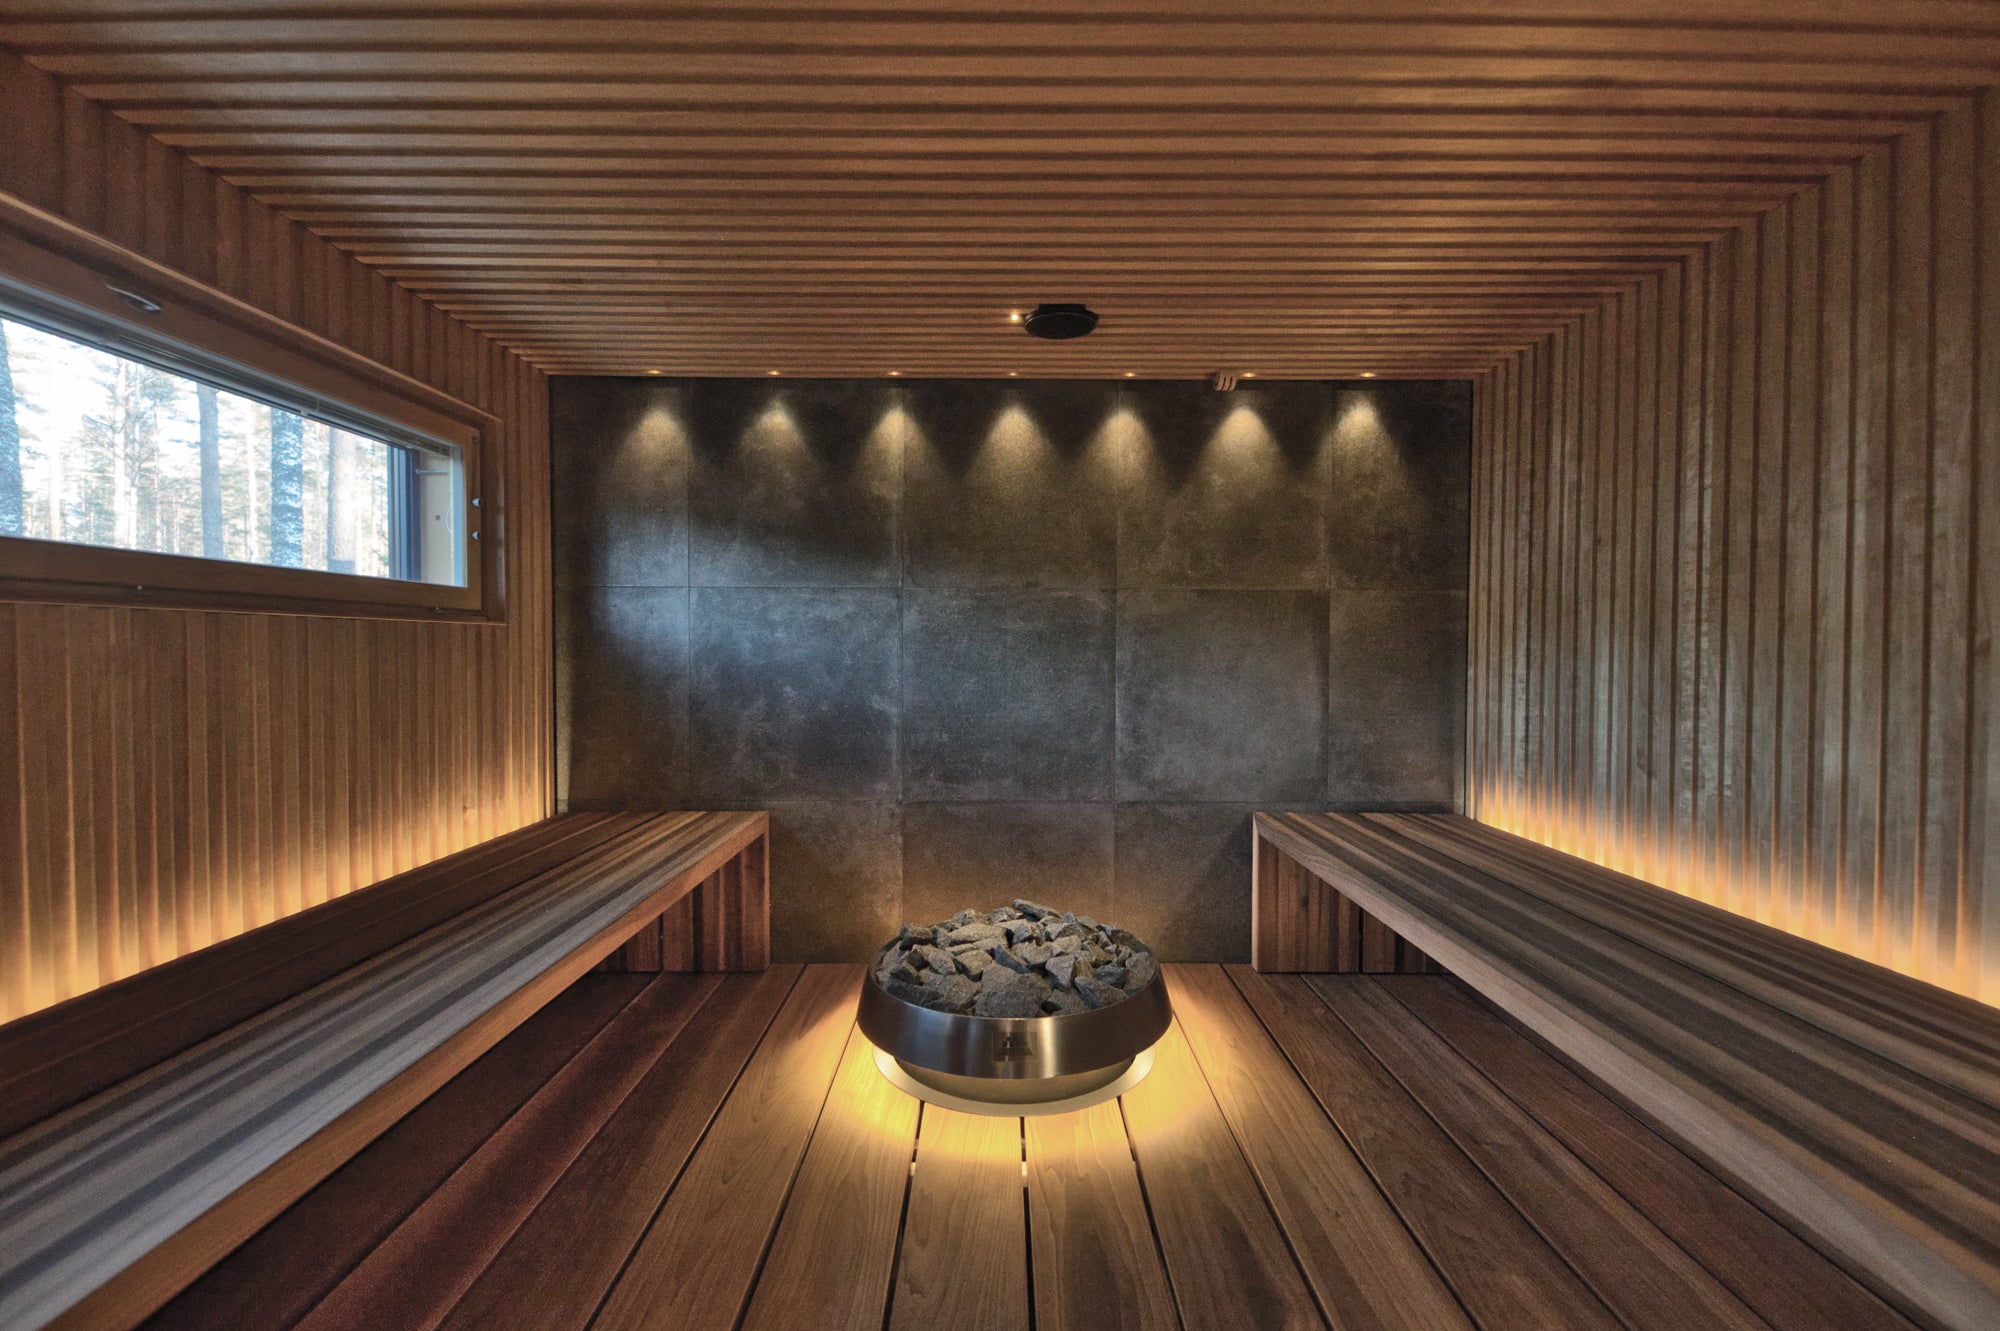 Sauna Revival - as sauna should be